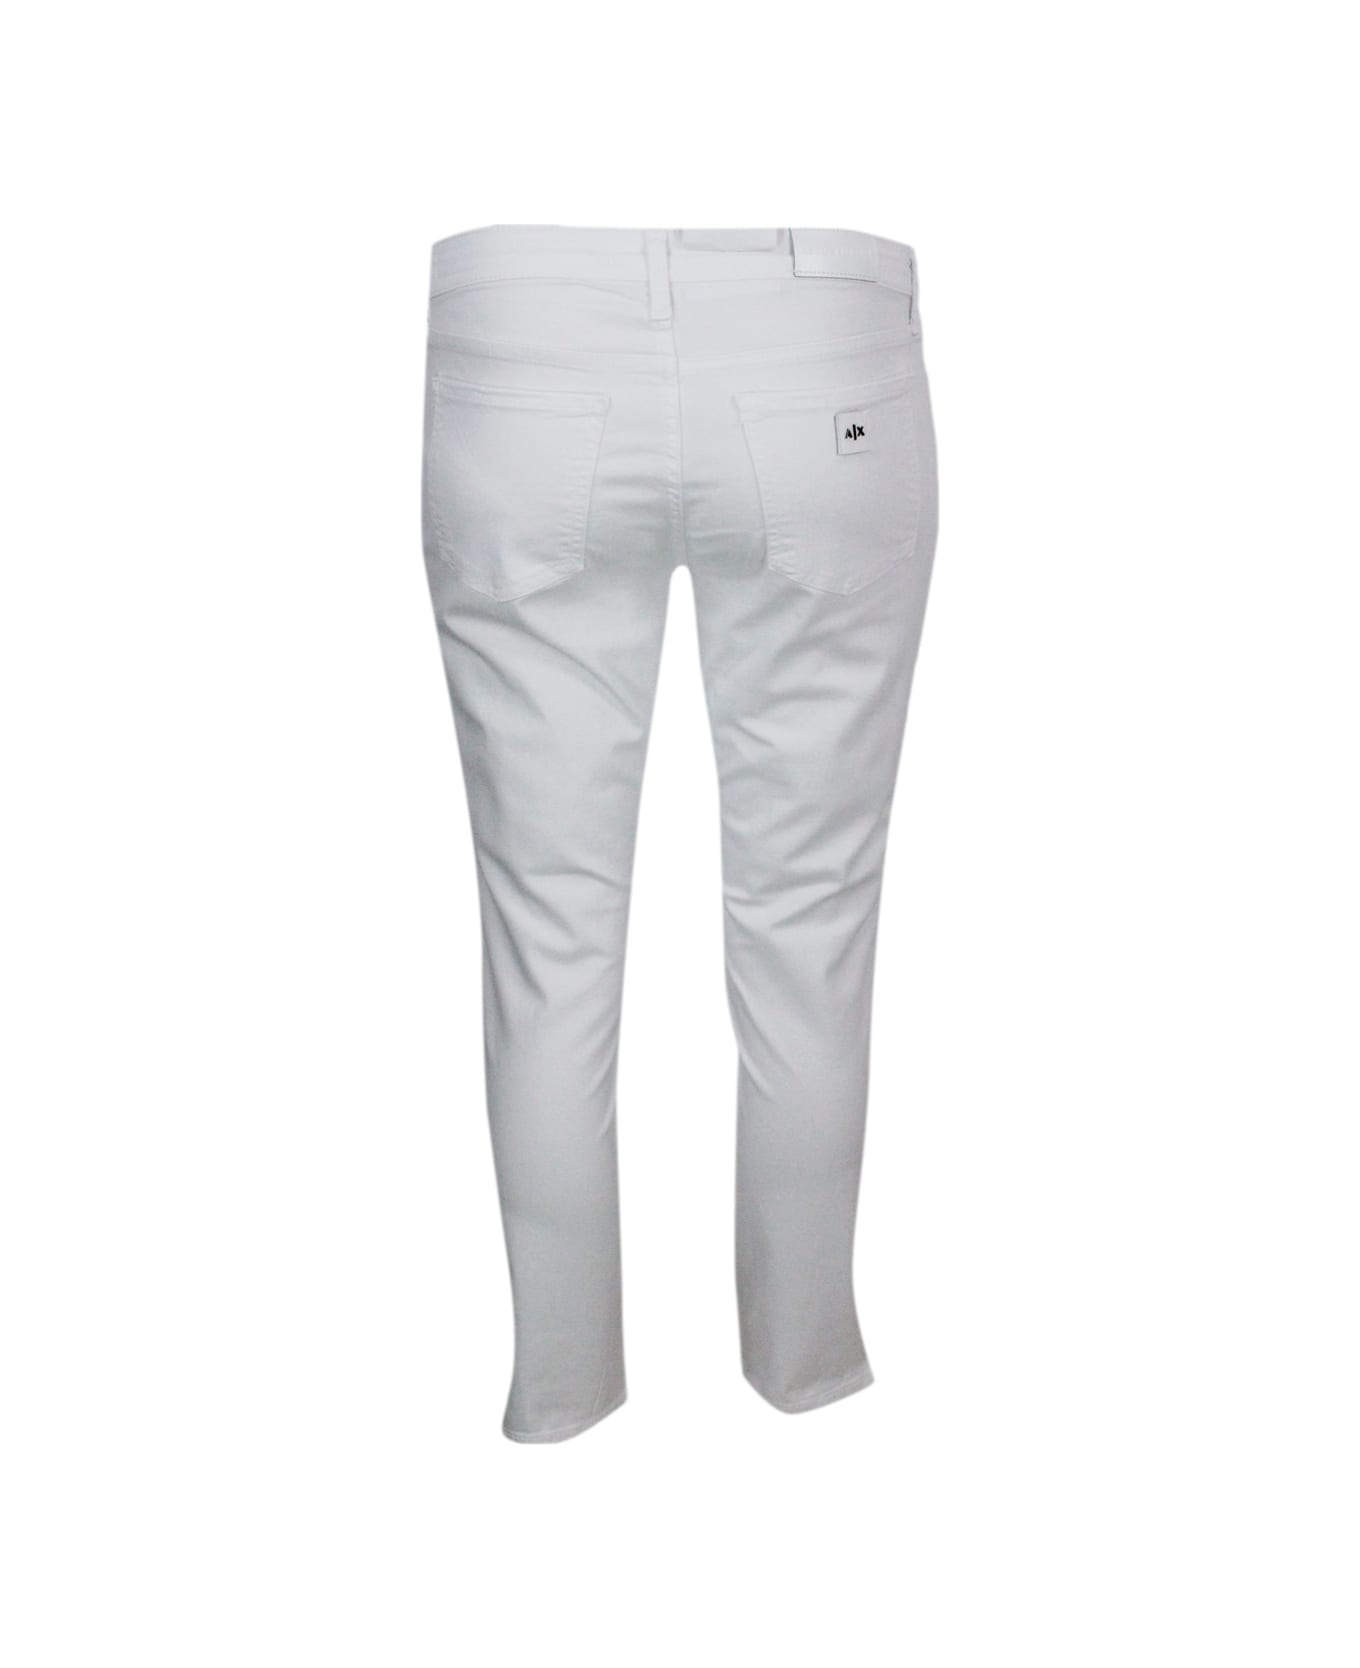 Armani Collezioni 5-pocket Trousers In Soft Stretch Cotton Super Skinny Capri. Zip And Button Closure. - White